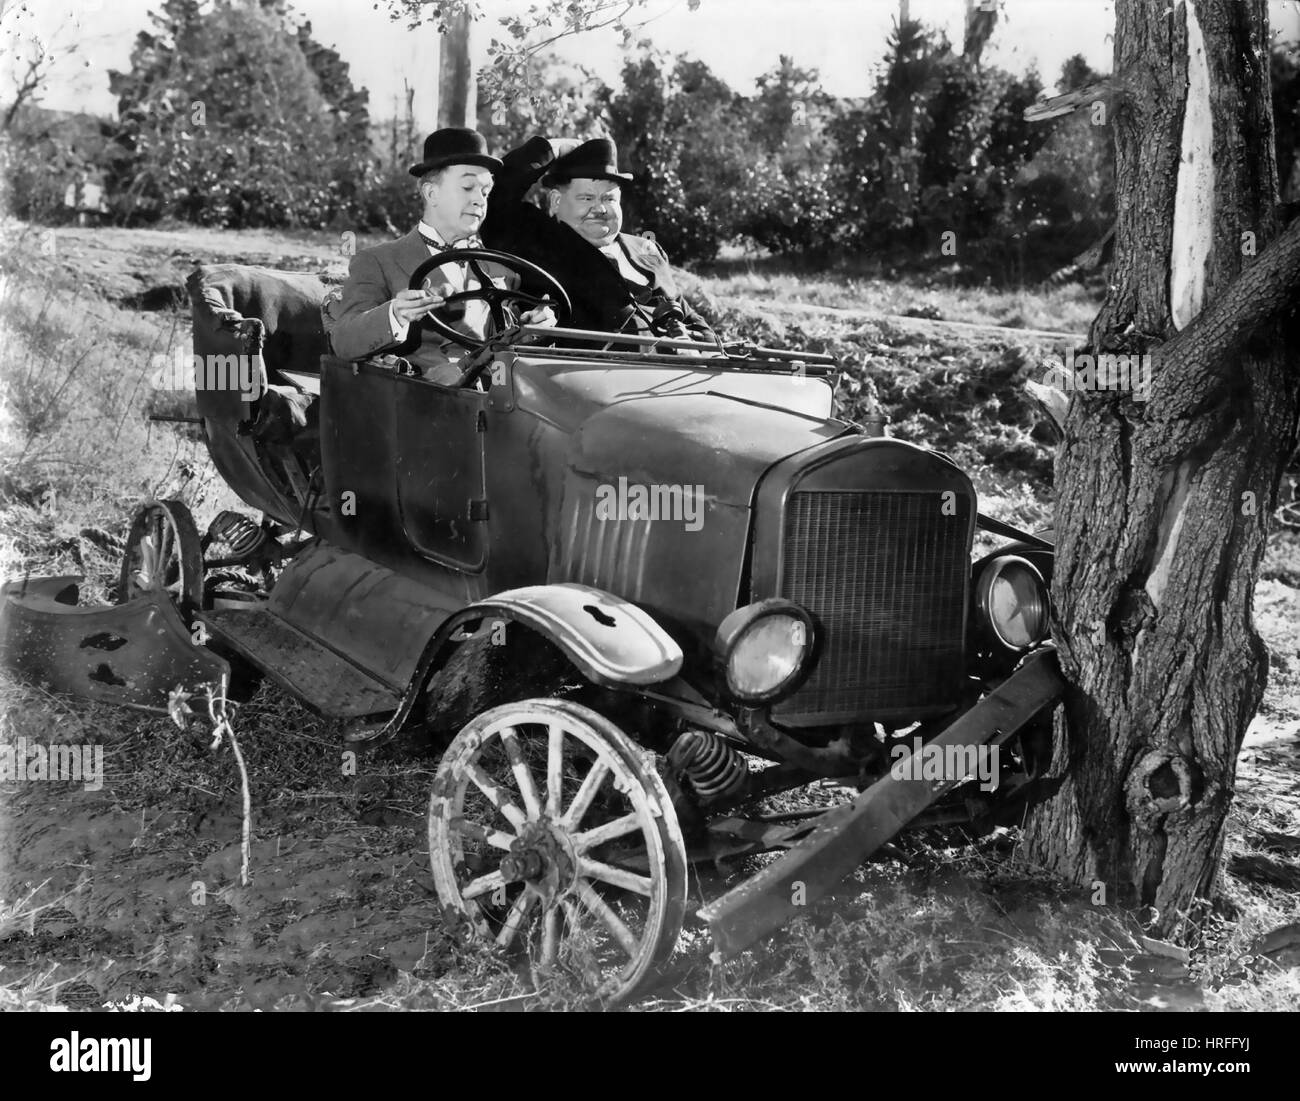 AIR RAID WARDENS 1943 MGM Film mit Oliver Hardy und Stan Laurel auf der linken Seite Stockfoto